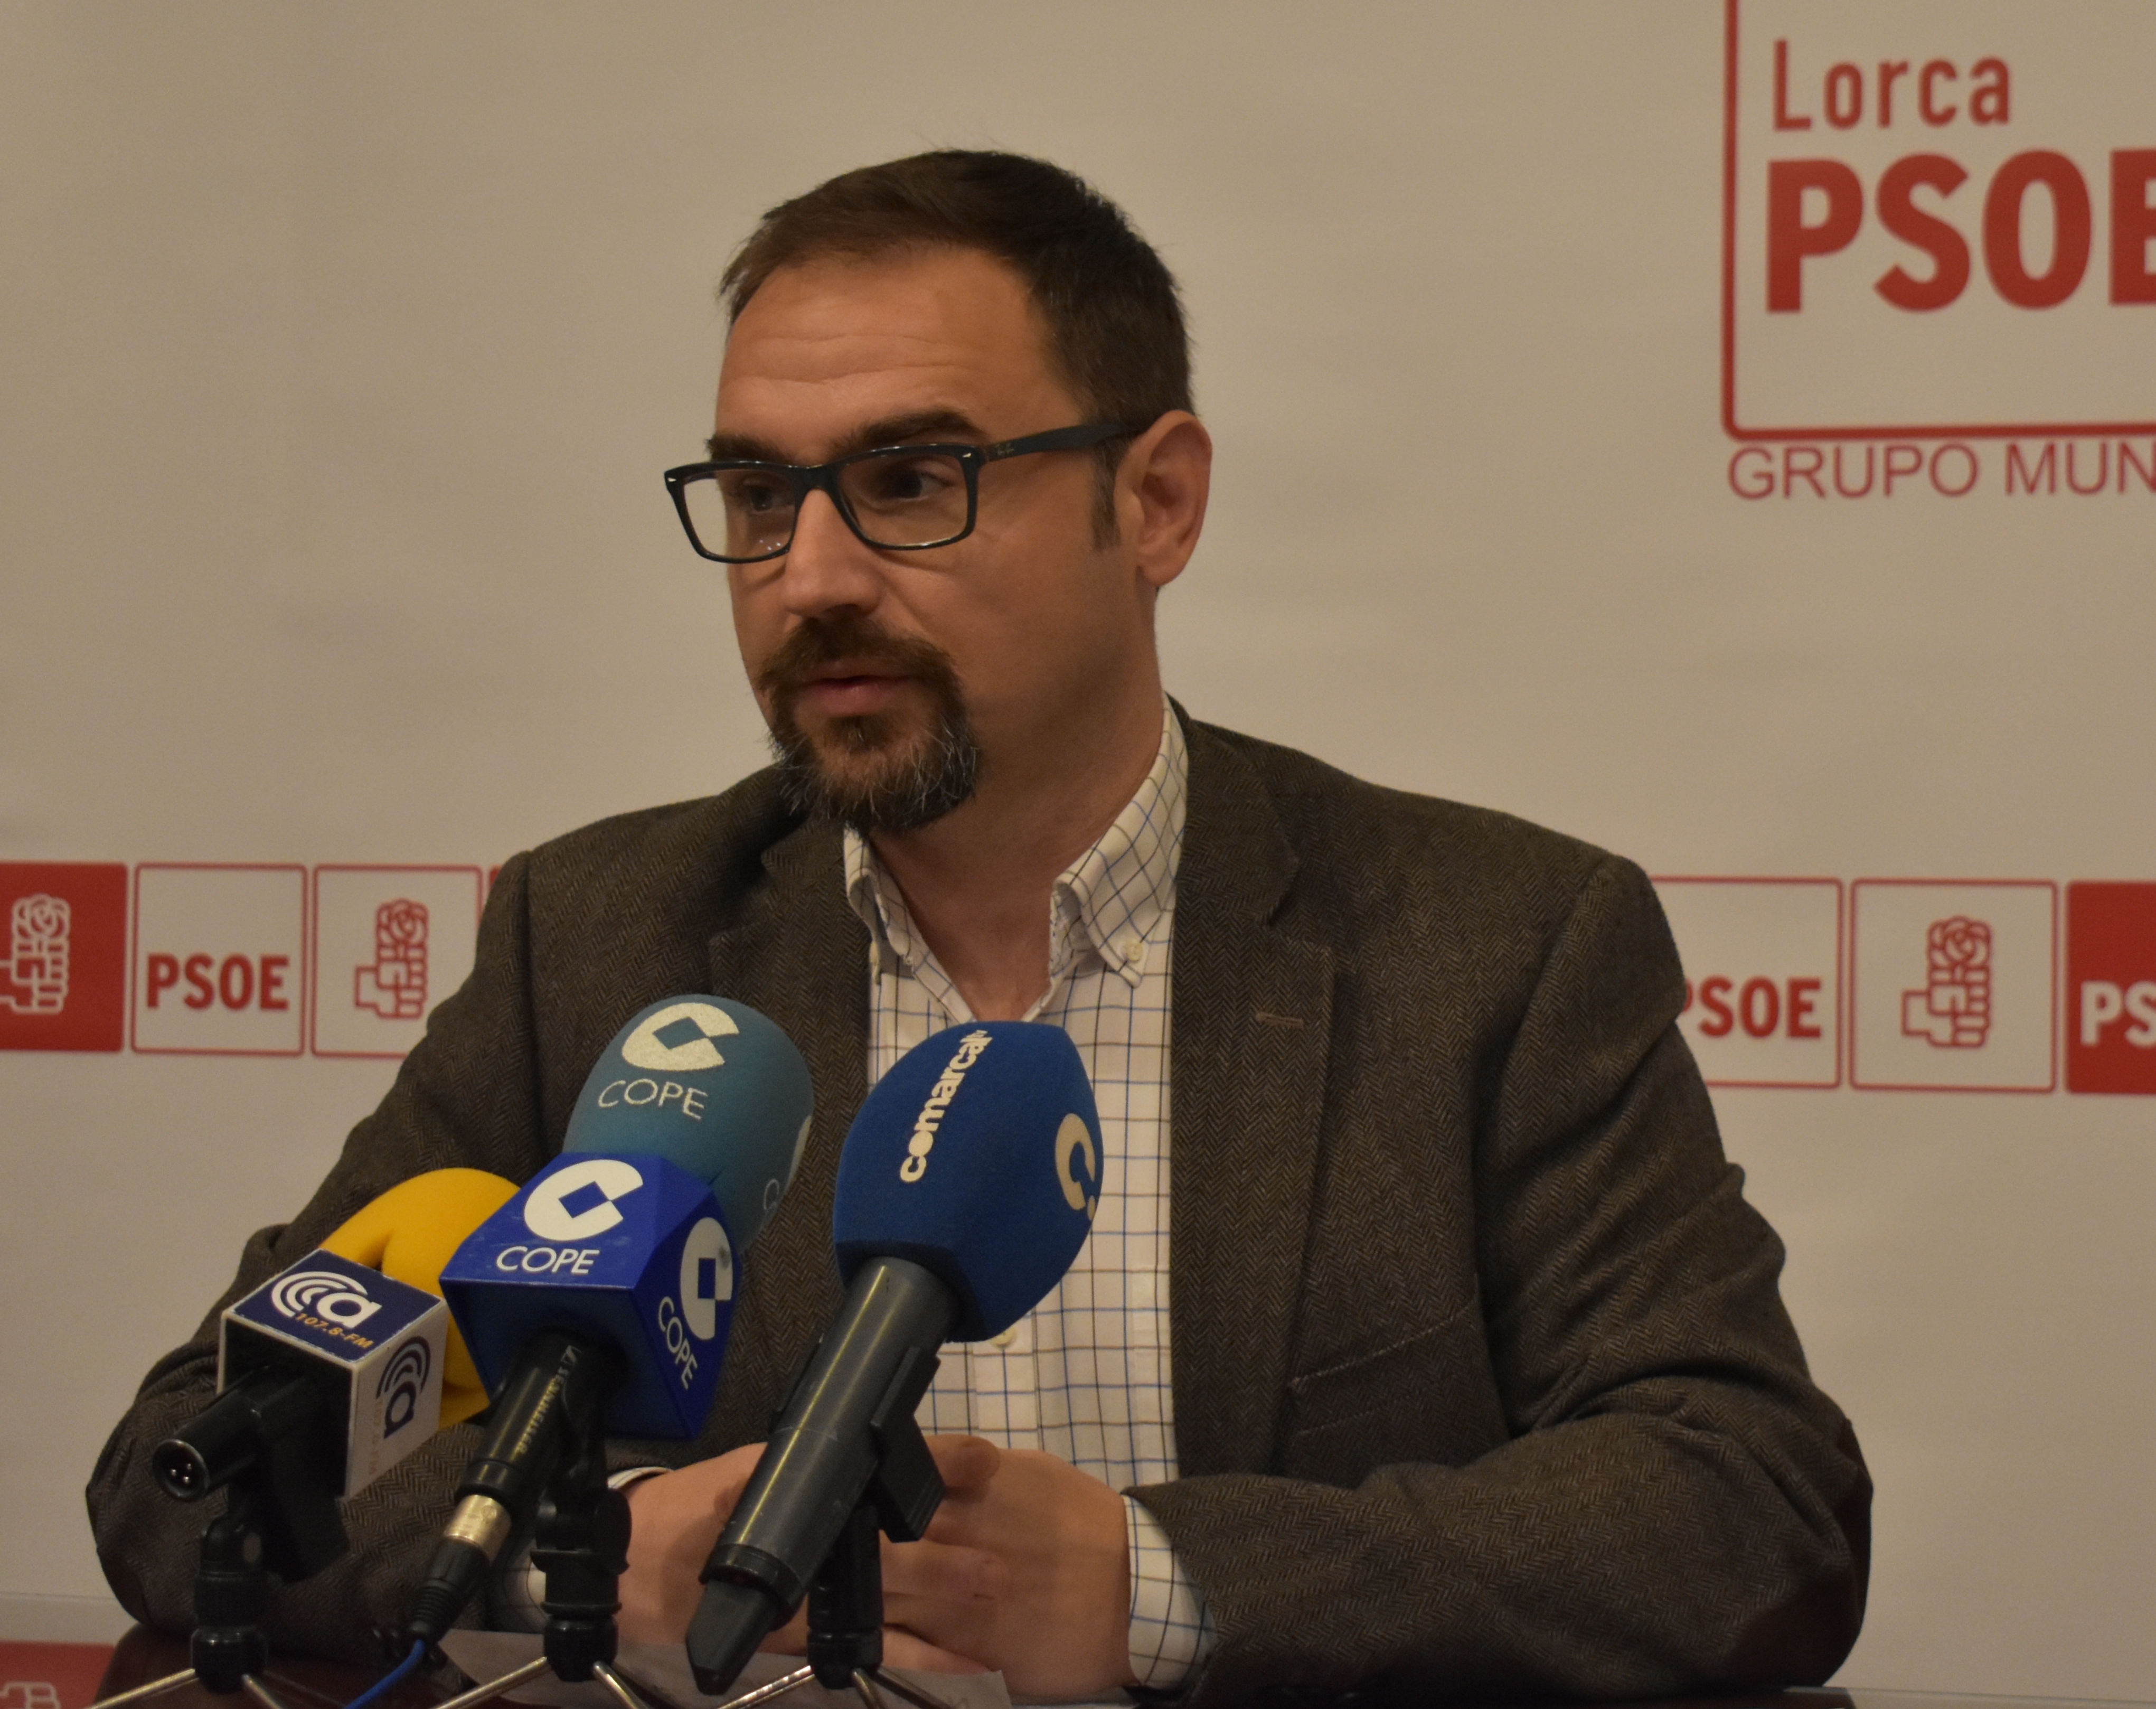 PSOE: Otro error del PP en la planificación de las obras obliga a anular el expediente del vial de los barrios altos y que se pierdan ocho meses de trabajo realizado